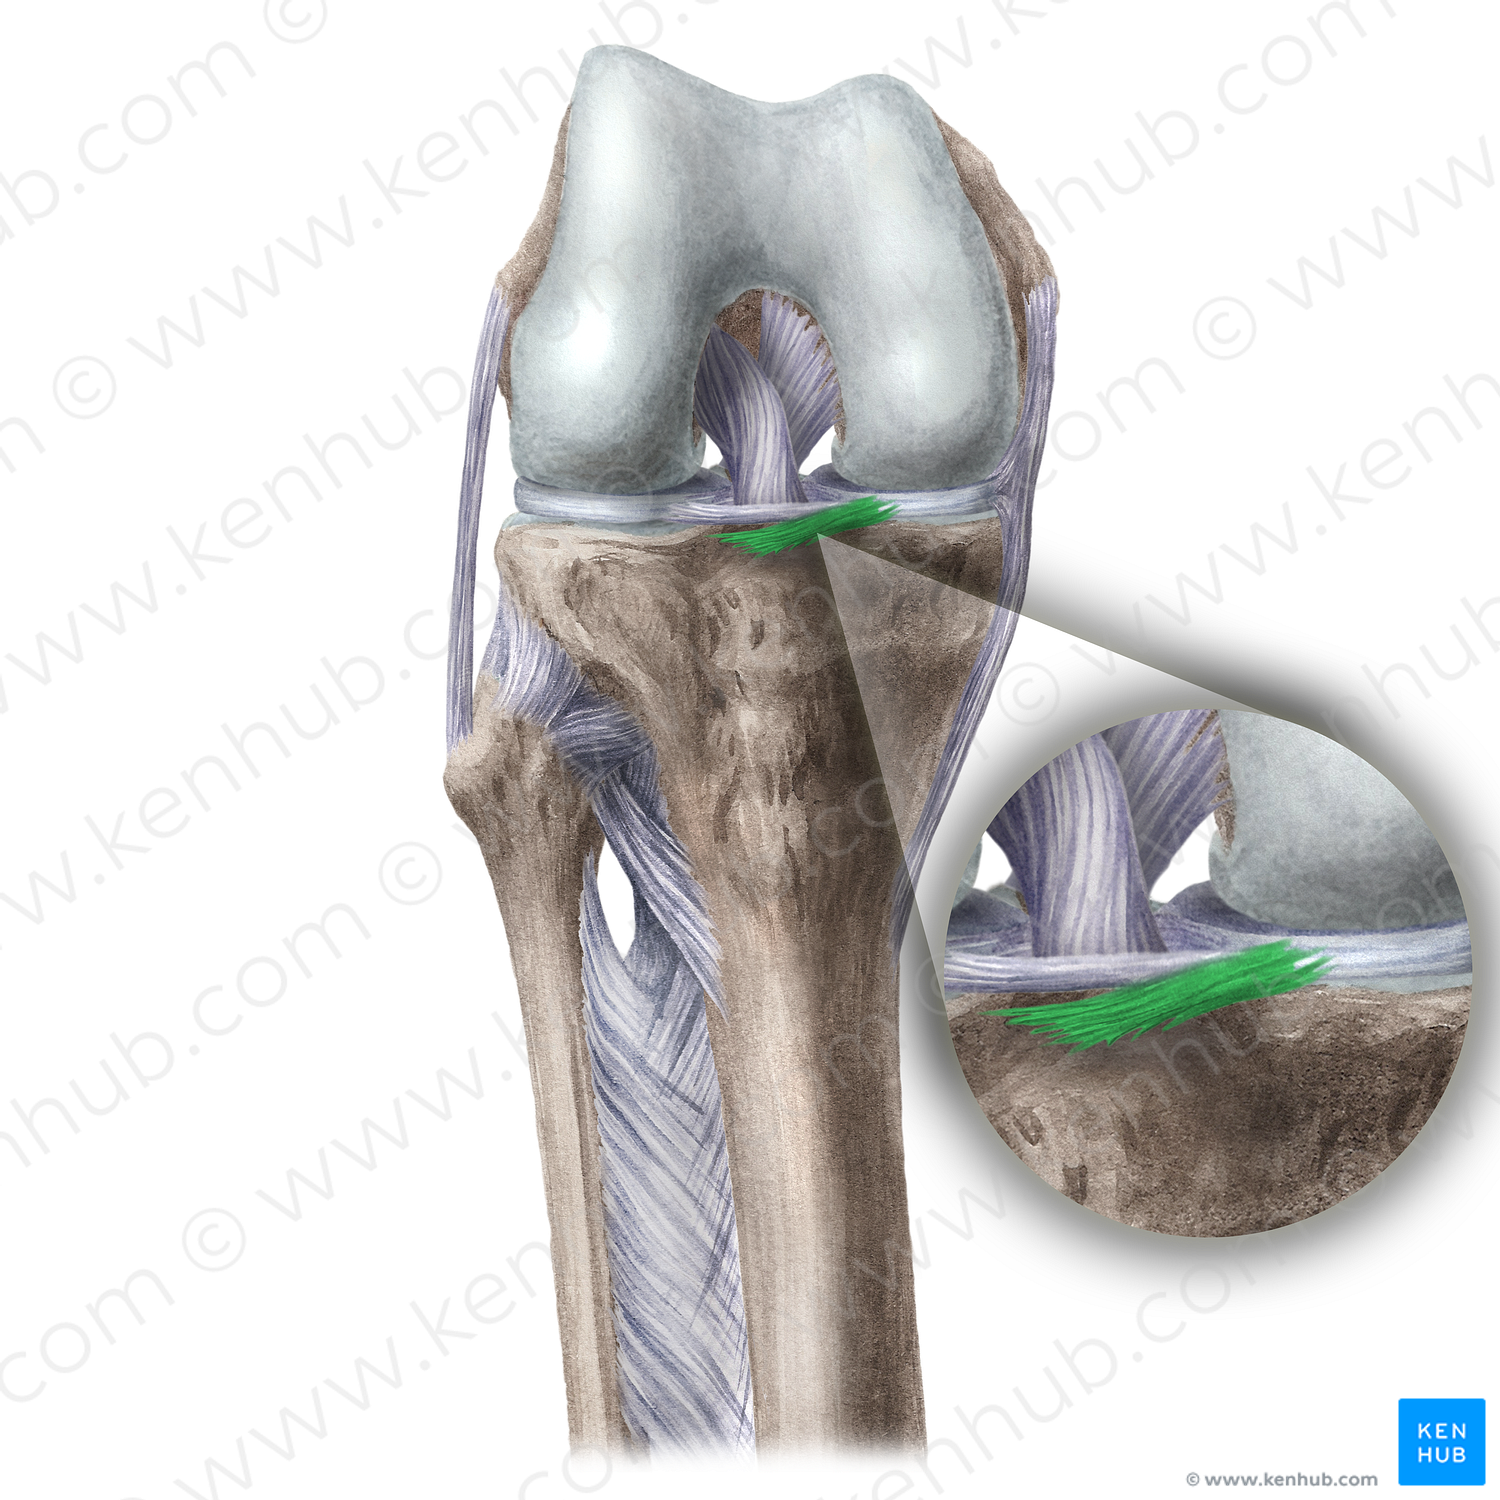 Anterior meniscotibial ligament (#20123)